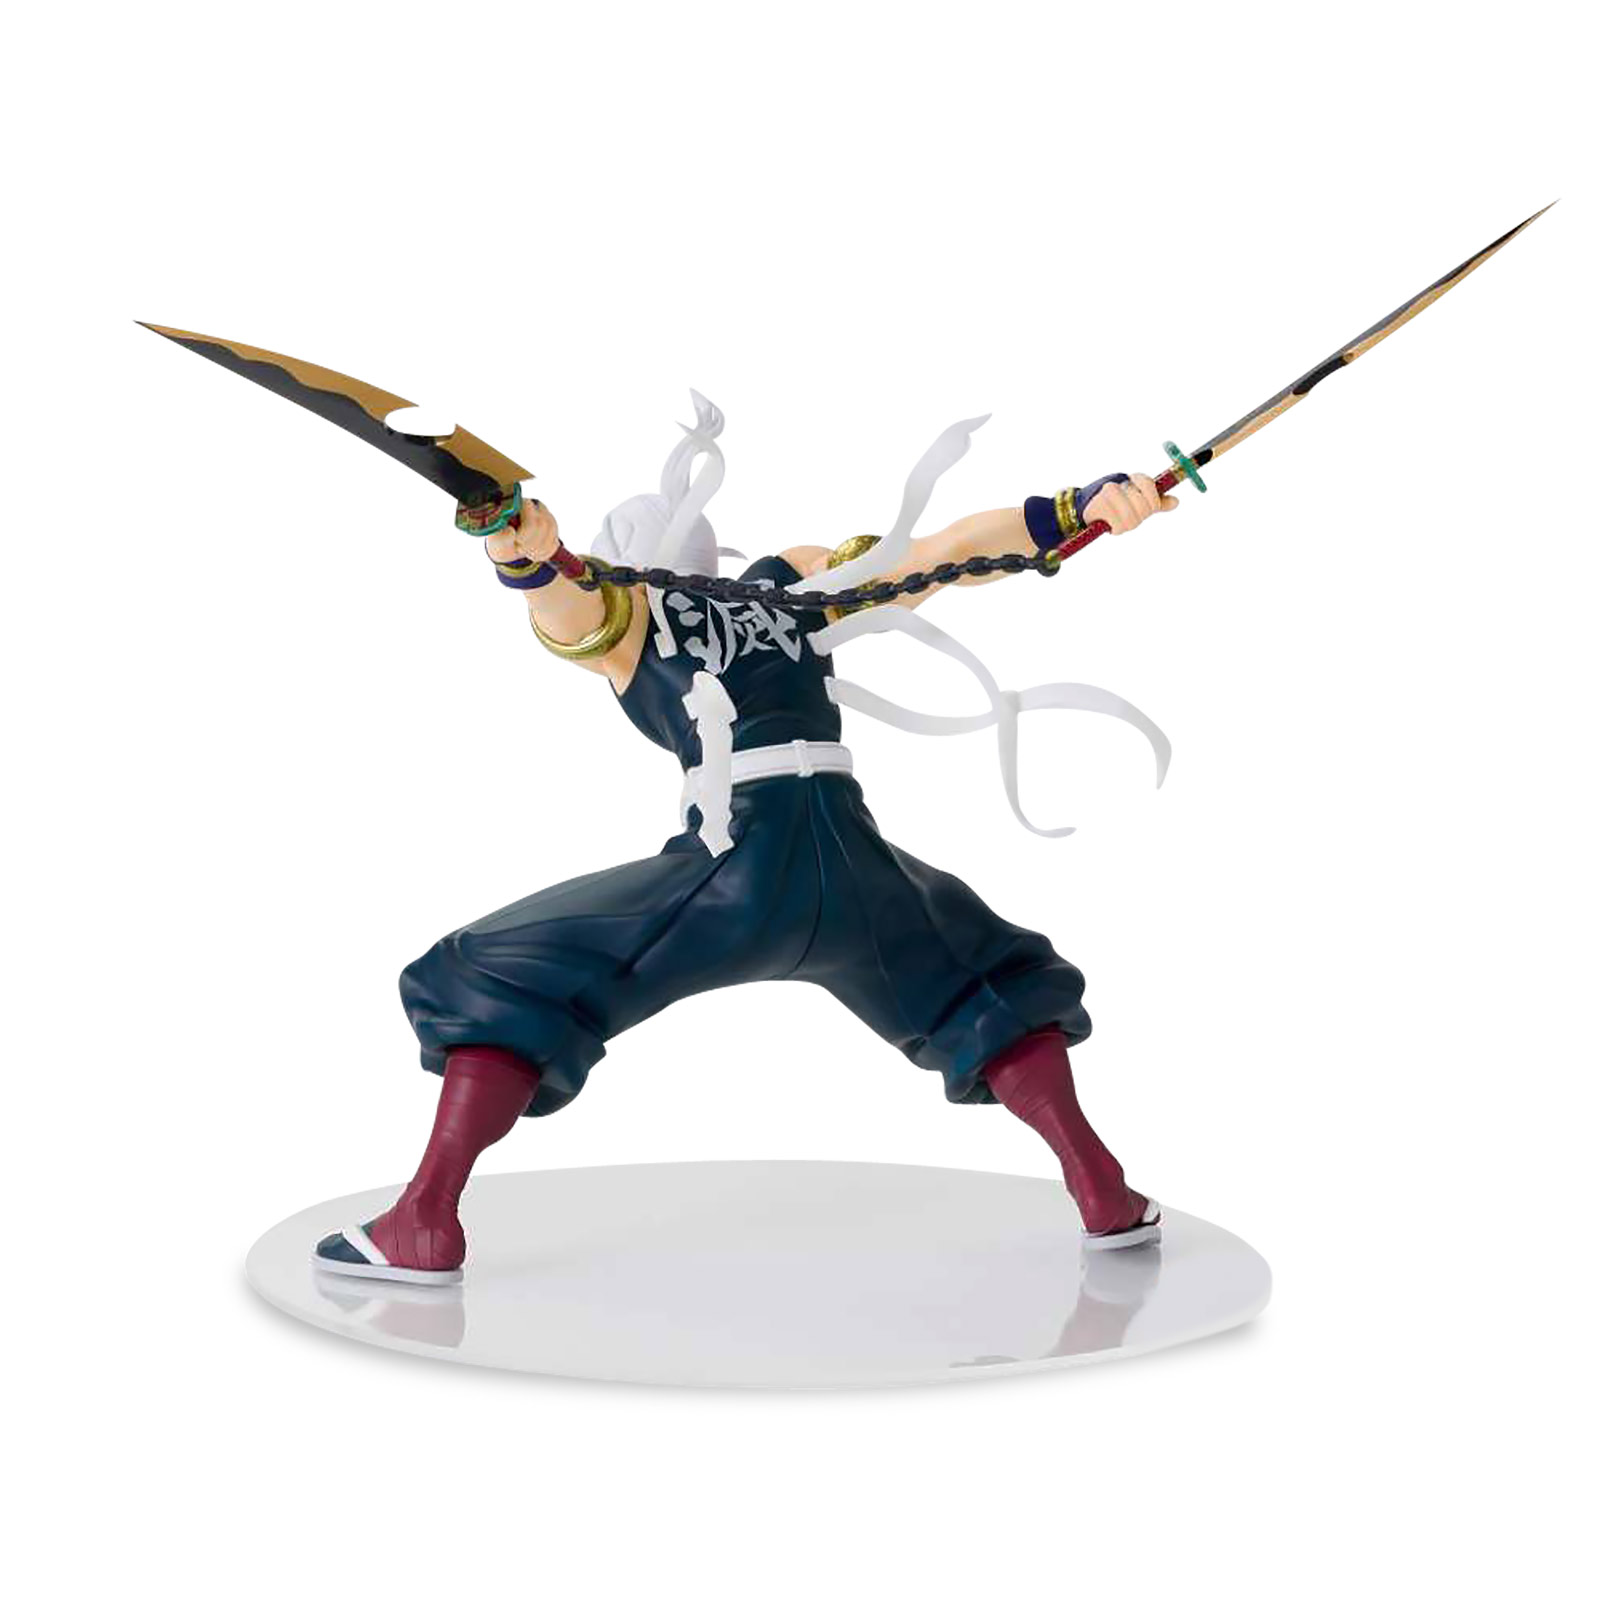 Demon Slayer - Figurine de Tengen Uzui en pleine bataille